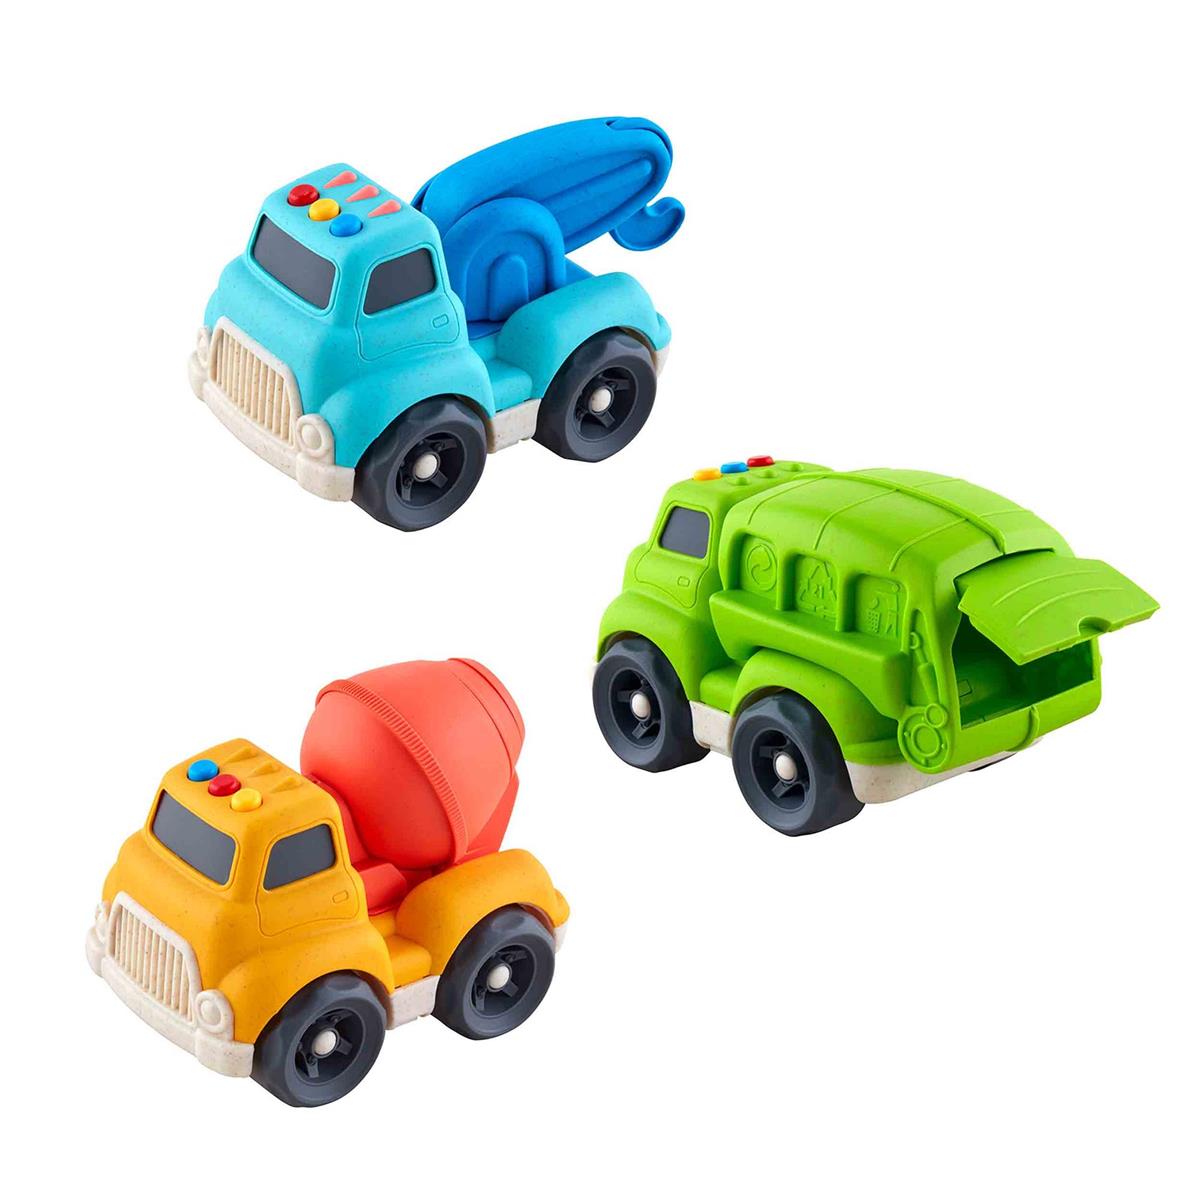 Mudpie- Construction Toy Trucks #10760267